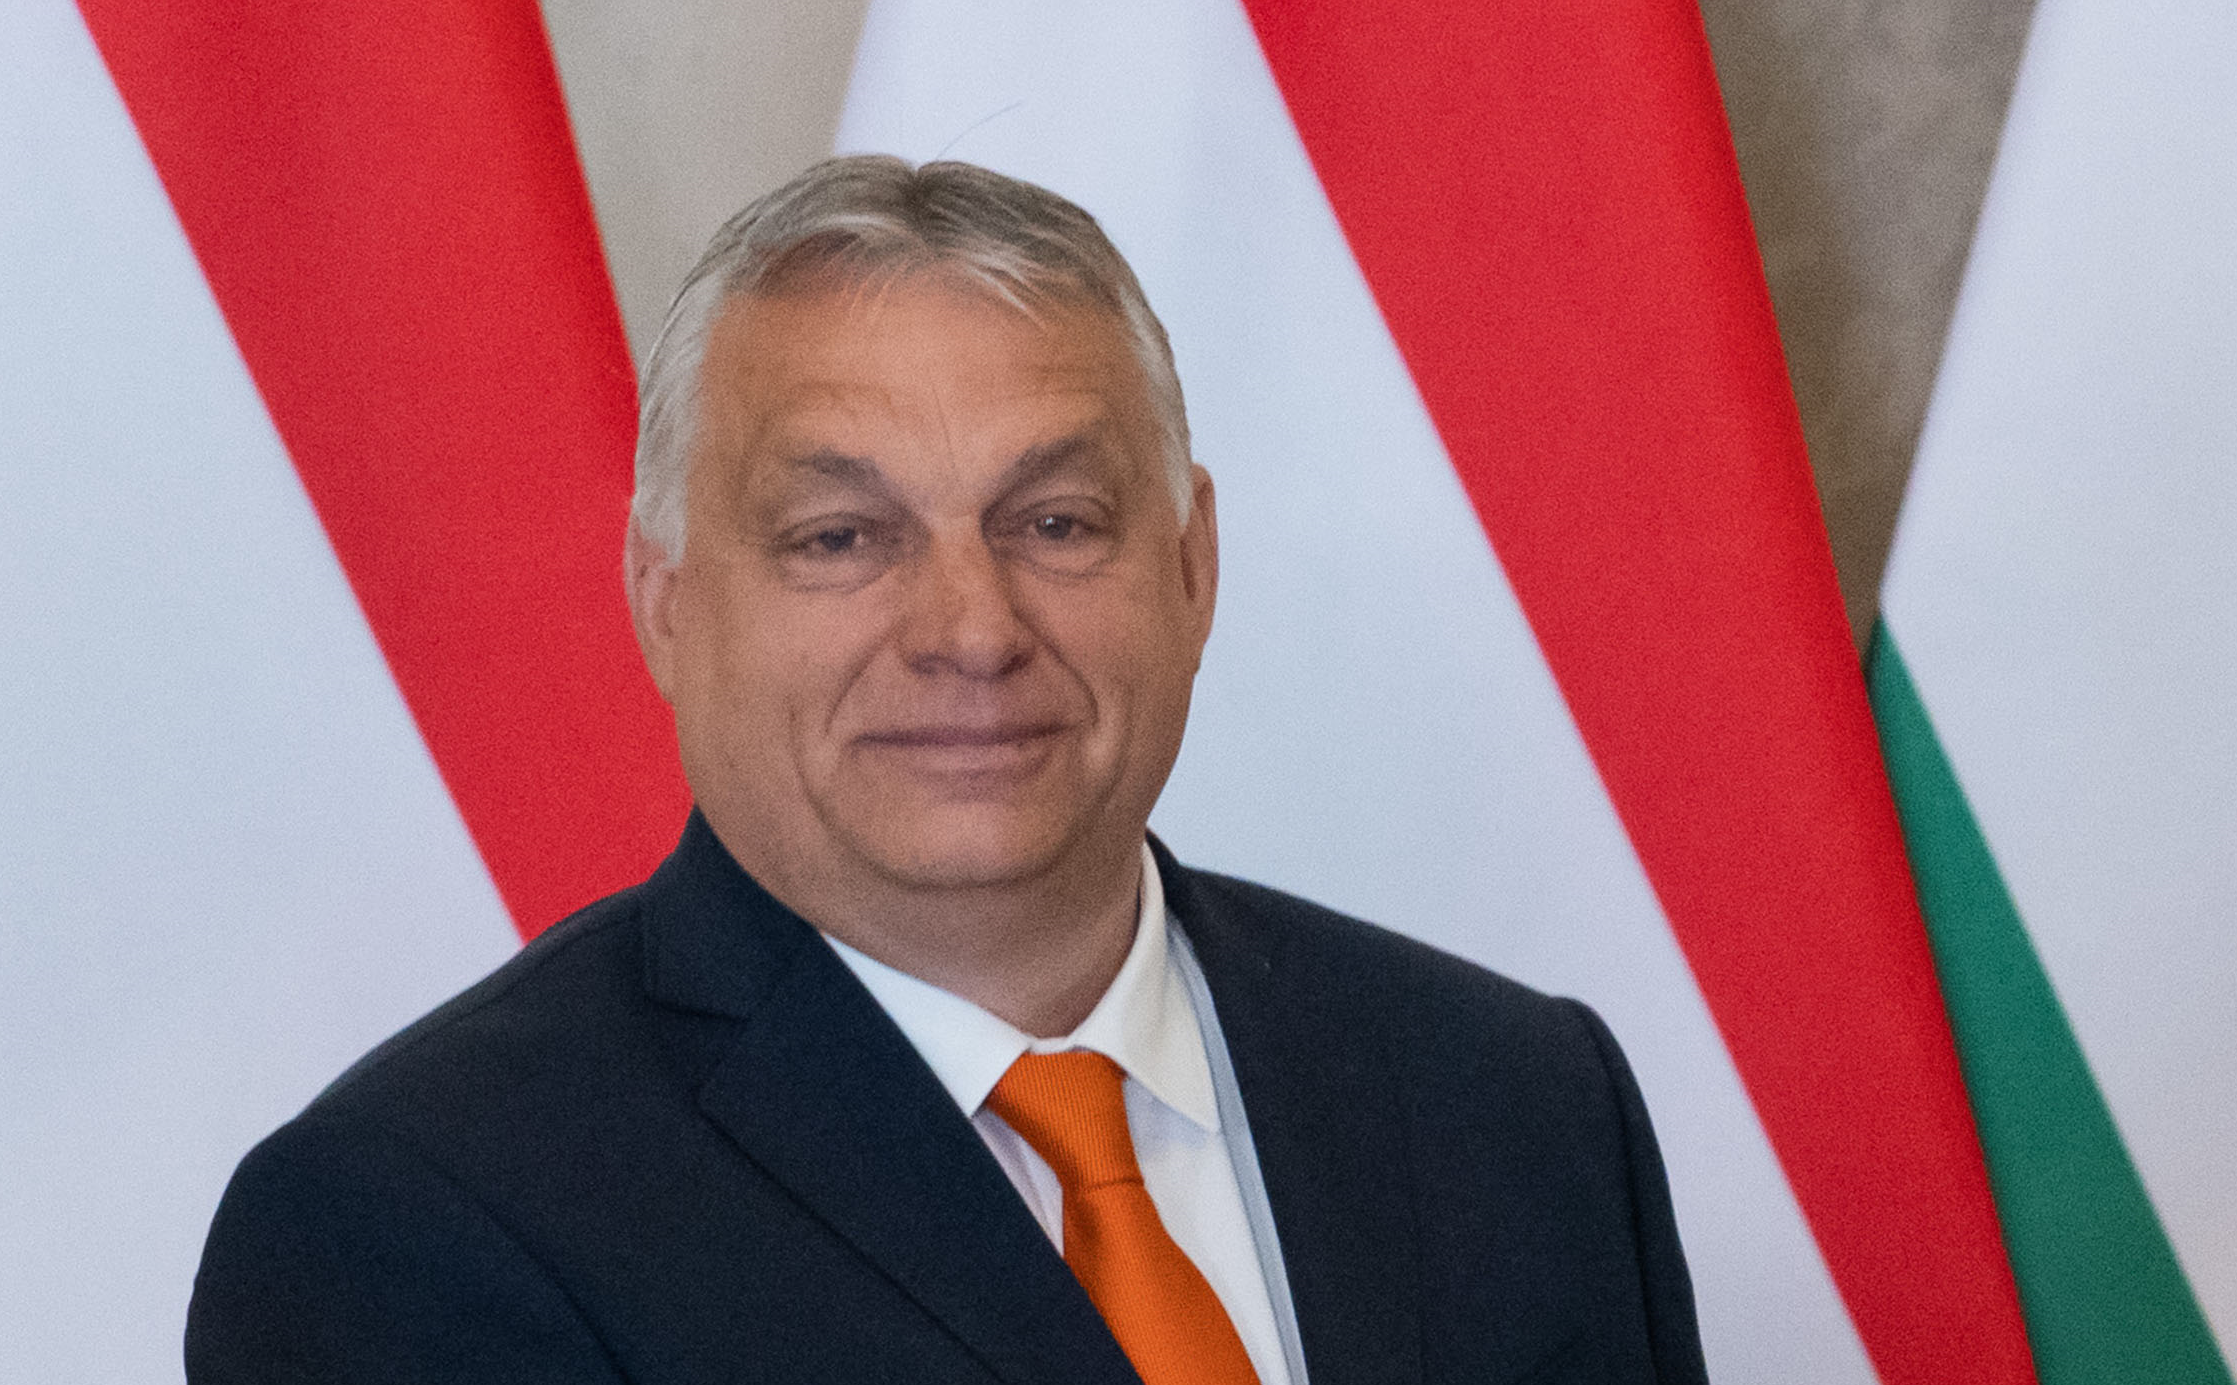 Kiderült, mennyit fizetett Orbán Viktor családja a római útjára, amelyet egy honvédségi géppel tettek meg: de a számokkal valami nem stimmel...